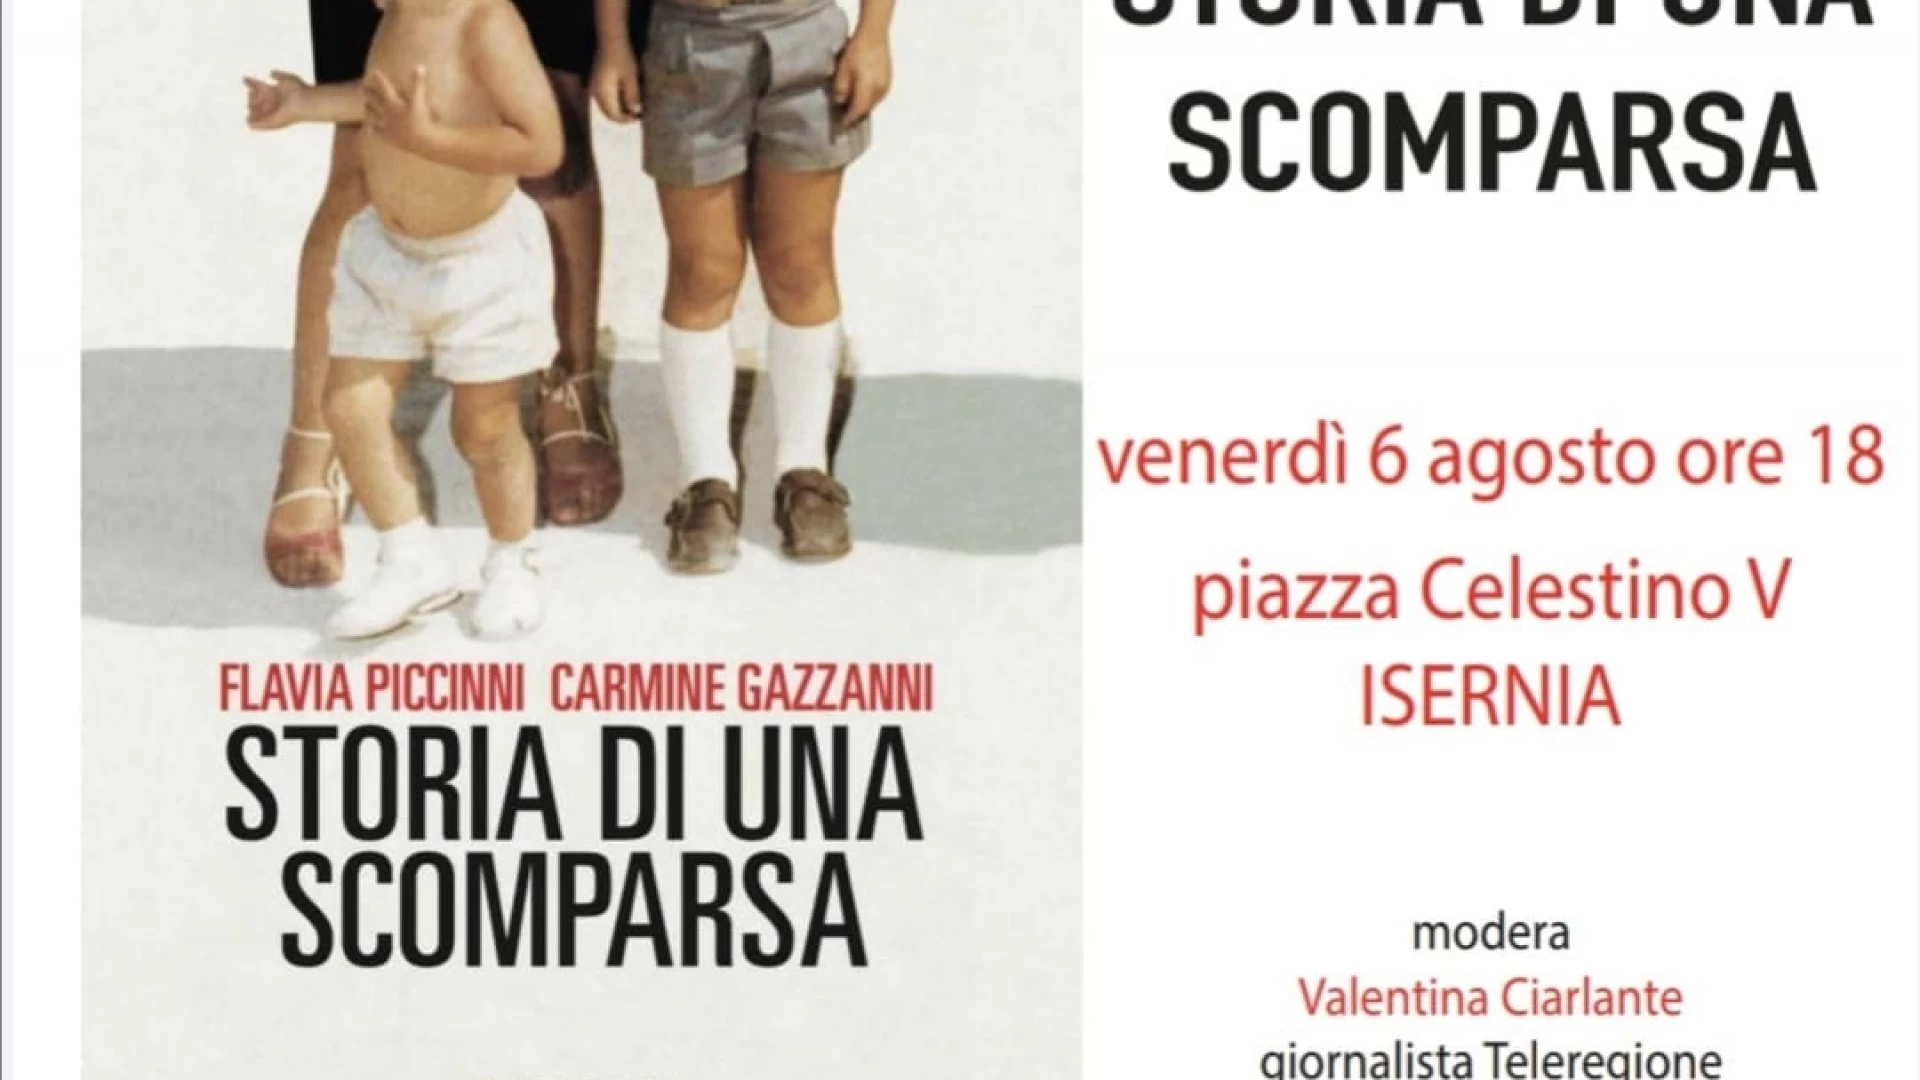 Tour molisano per il libro di Gazzani e Piccinini “Storia di una Scomparsa”.